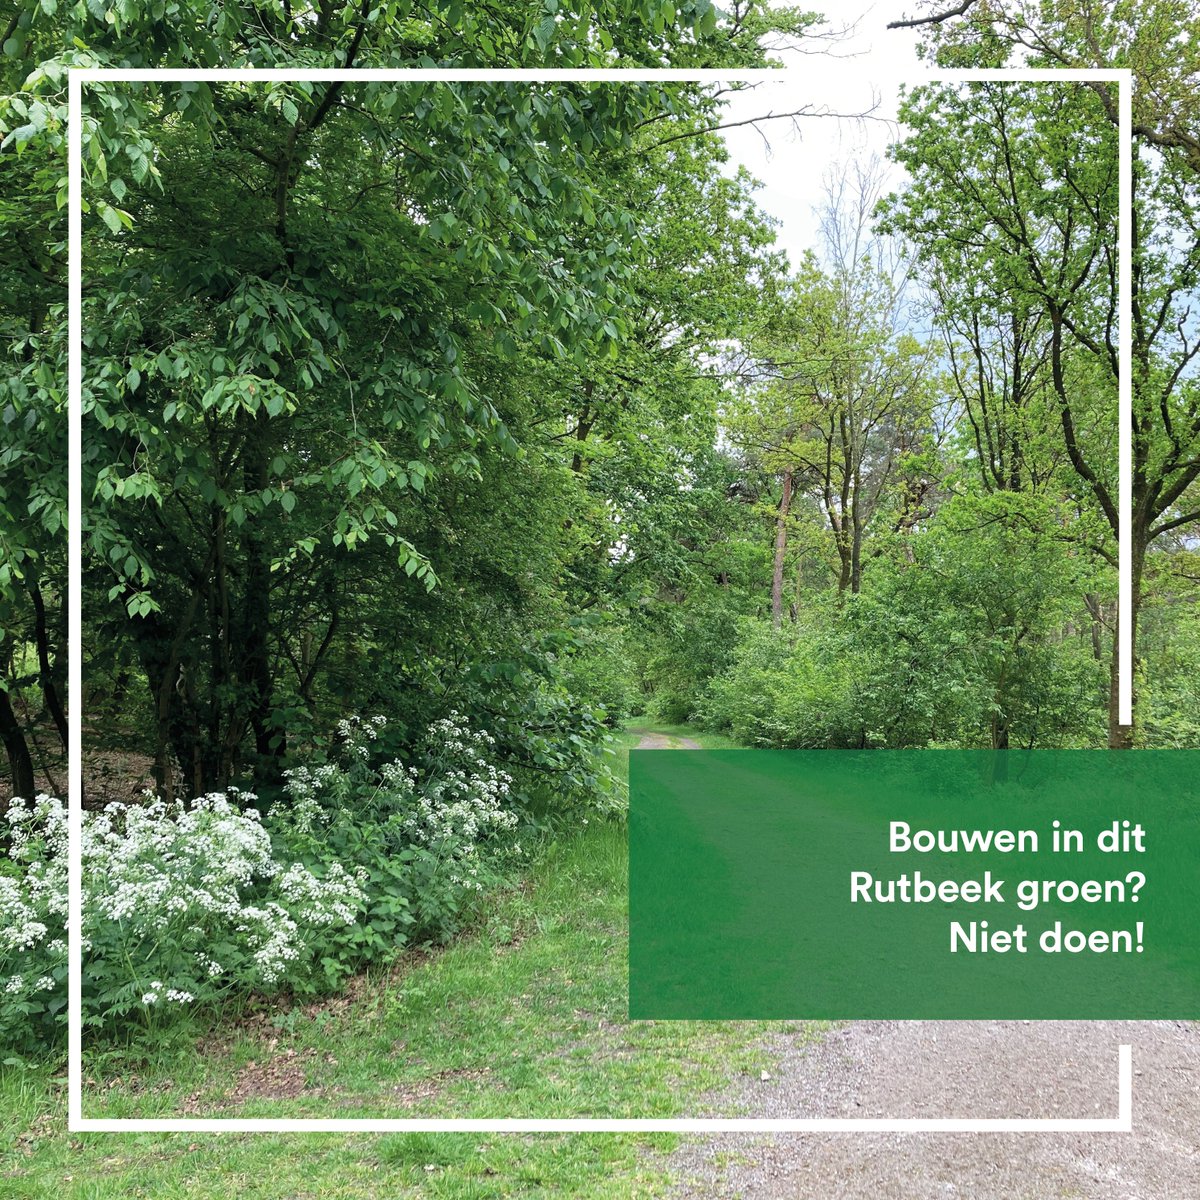 Duizenden en duizenden bomen wil men op het #rutbeek in #enschede gaan kappen!
En waarvoor?
Vakantiebungalows. 😲
Daarom zeggen wij: Bouwen in het groen, moet je gewoon niet doen! 👇